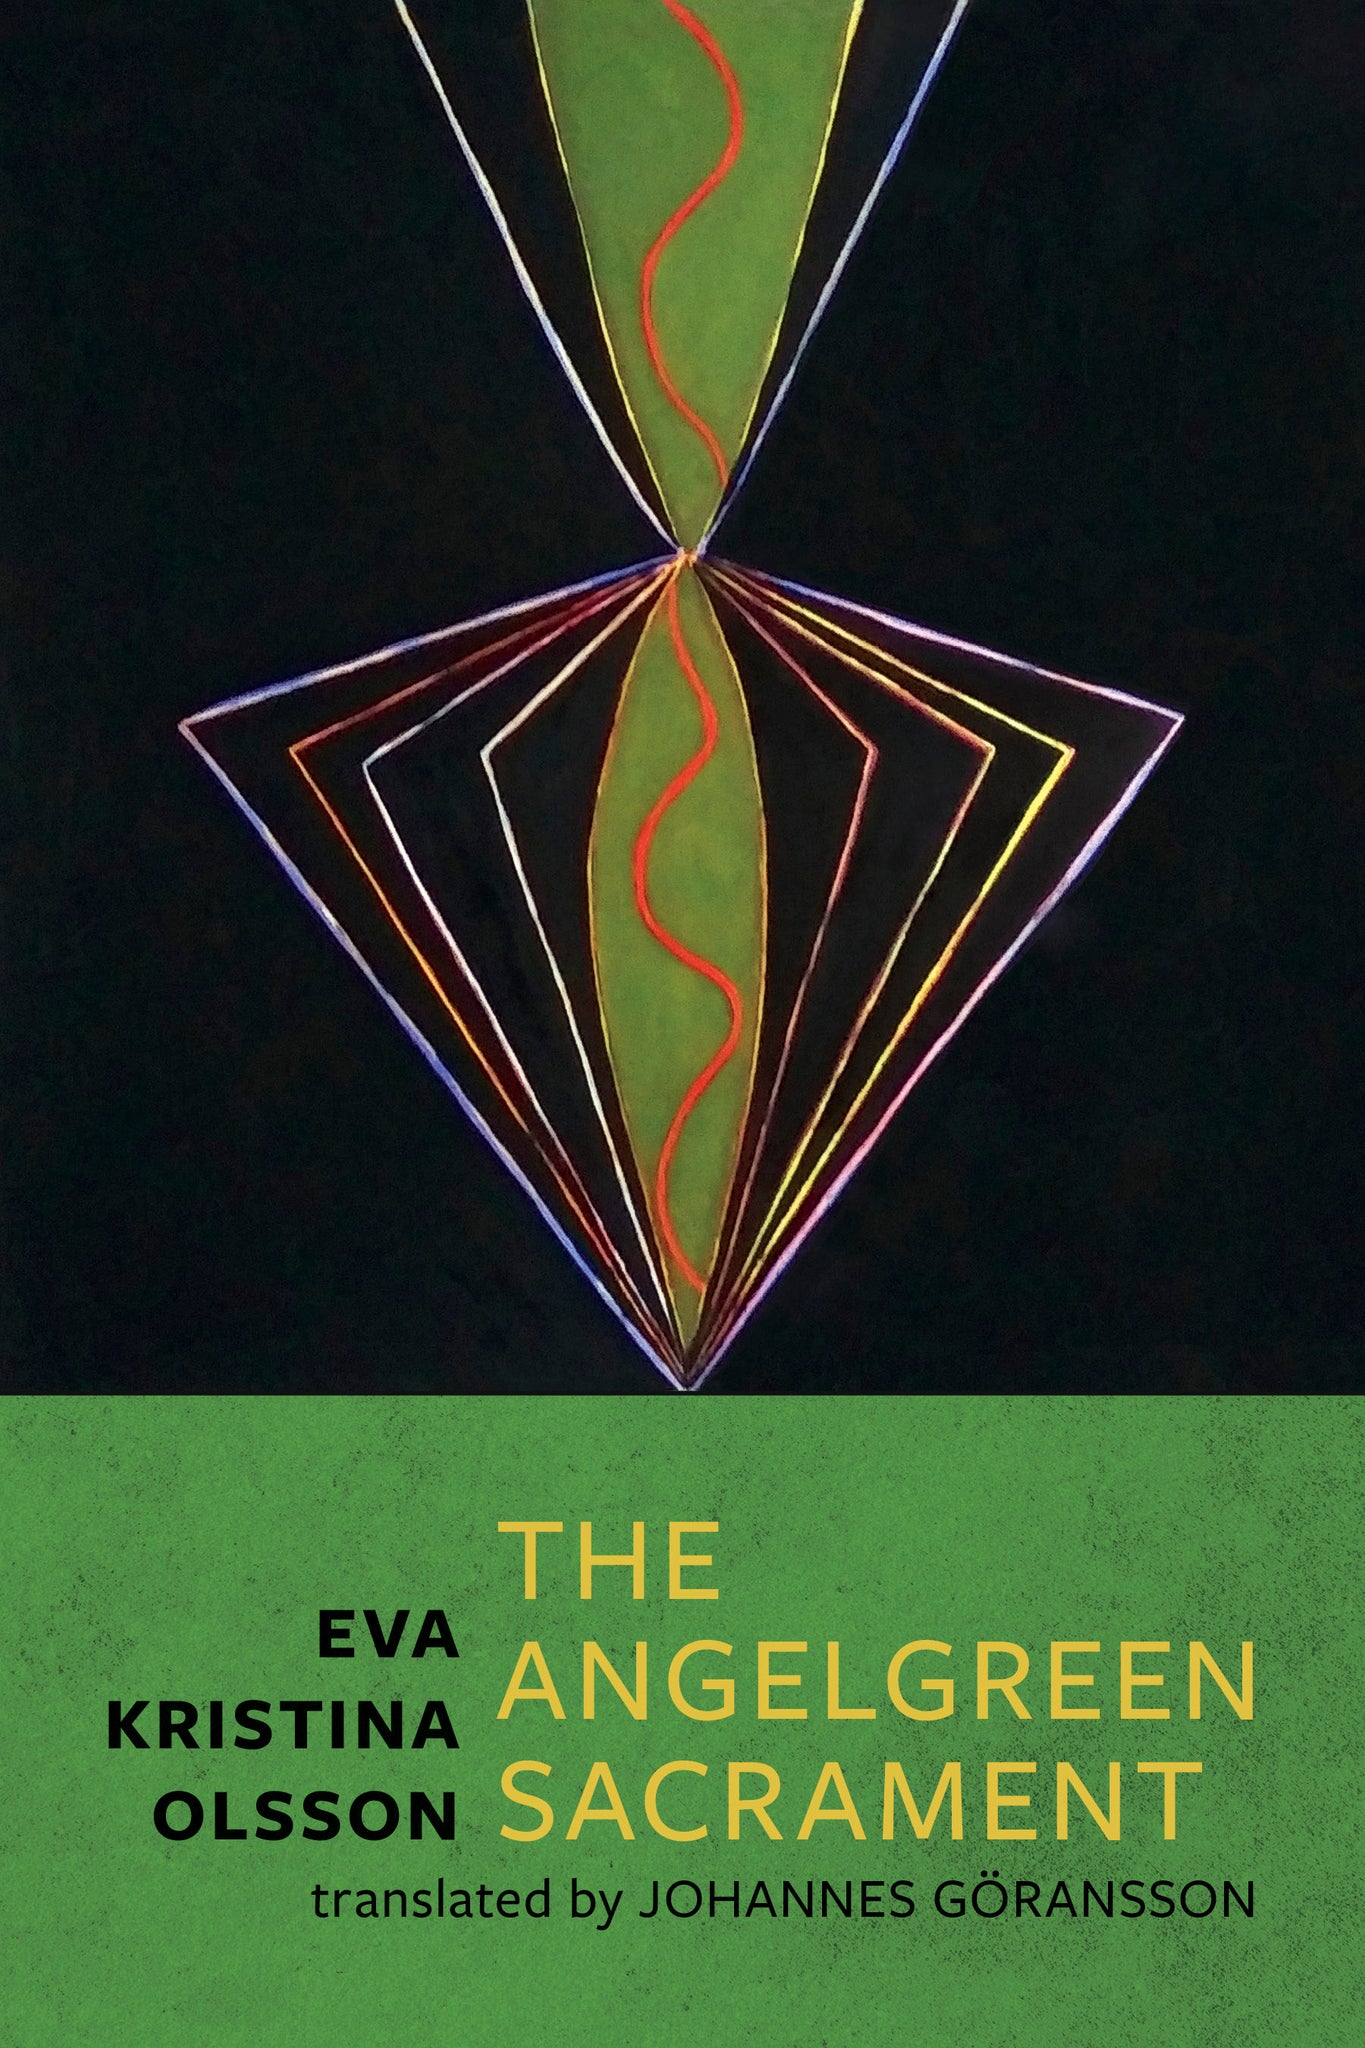 The Angelgreen Sacrament